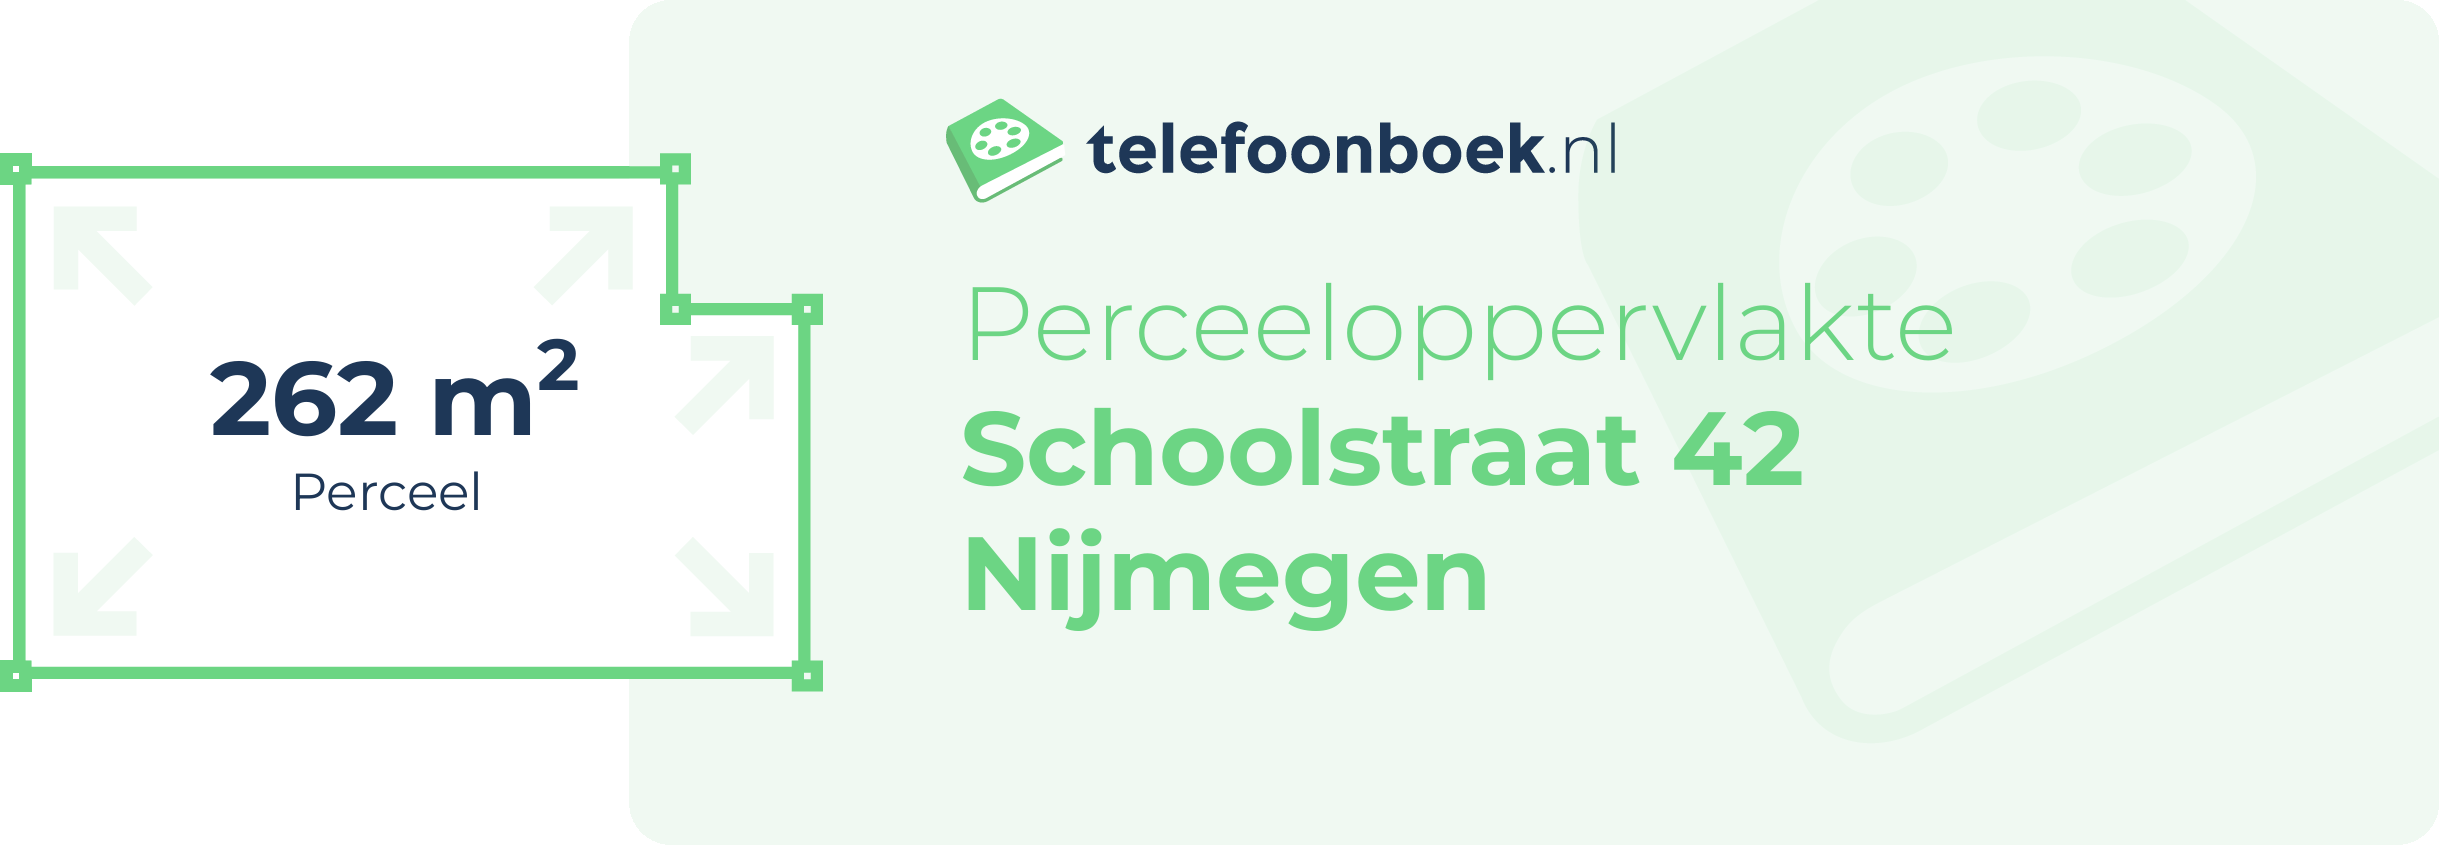 Perceeloppervlakte Schoolstraat 42 Nijmegen